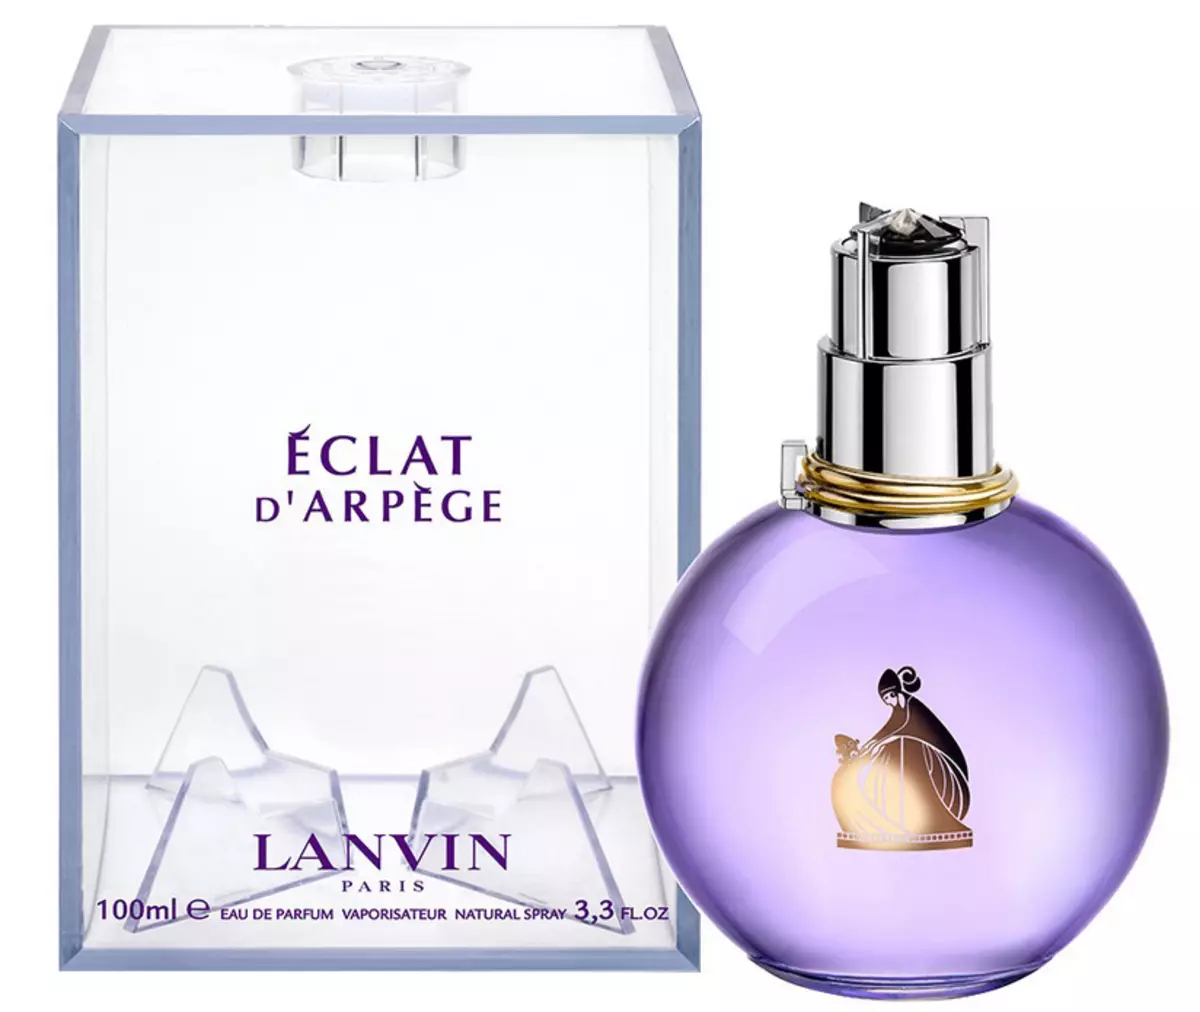 Lanvin Parfumoj (50 fotoj): Parfumo de virinoj Eclat d'Arpege, Moderna Princino Eau Sensuelle kaj knabino en Capri, JEANNE Skandalo kaj aliaj gustoj 25158_26